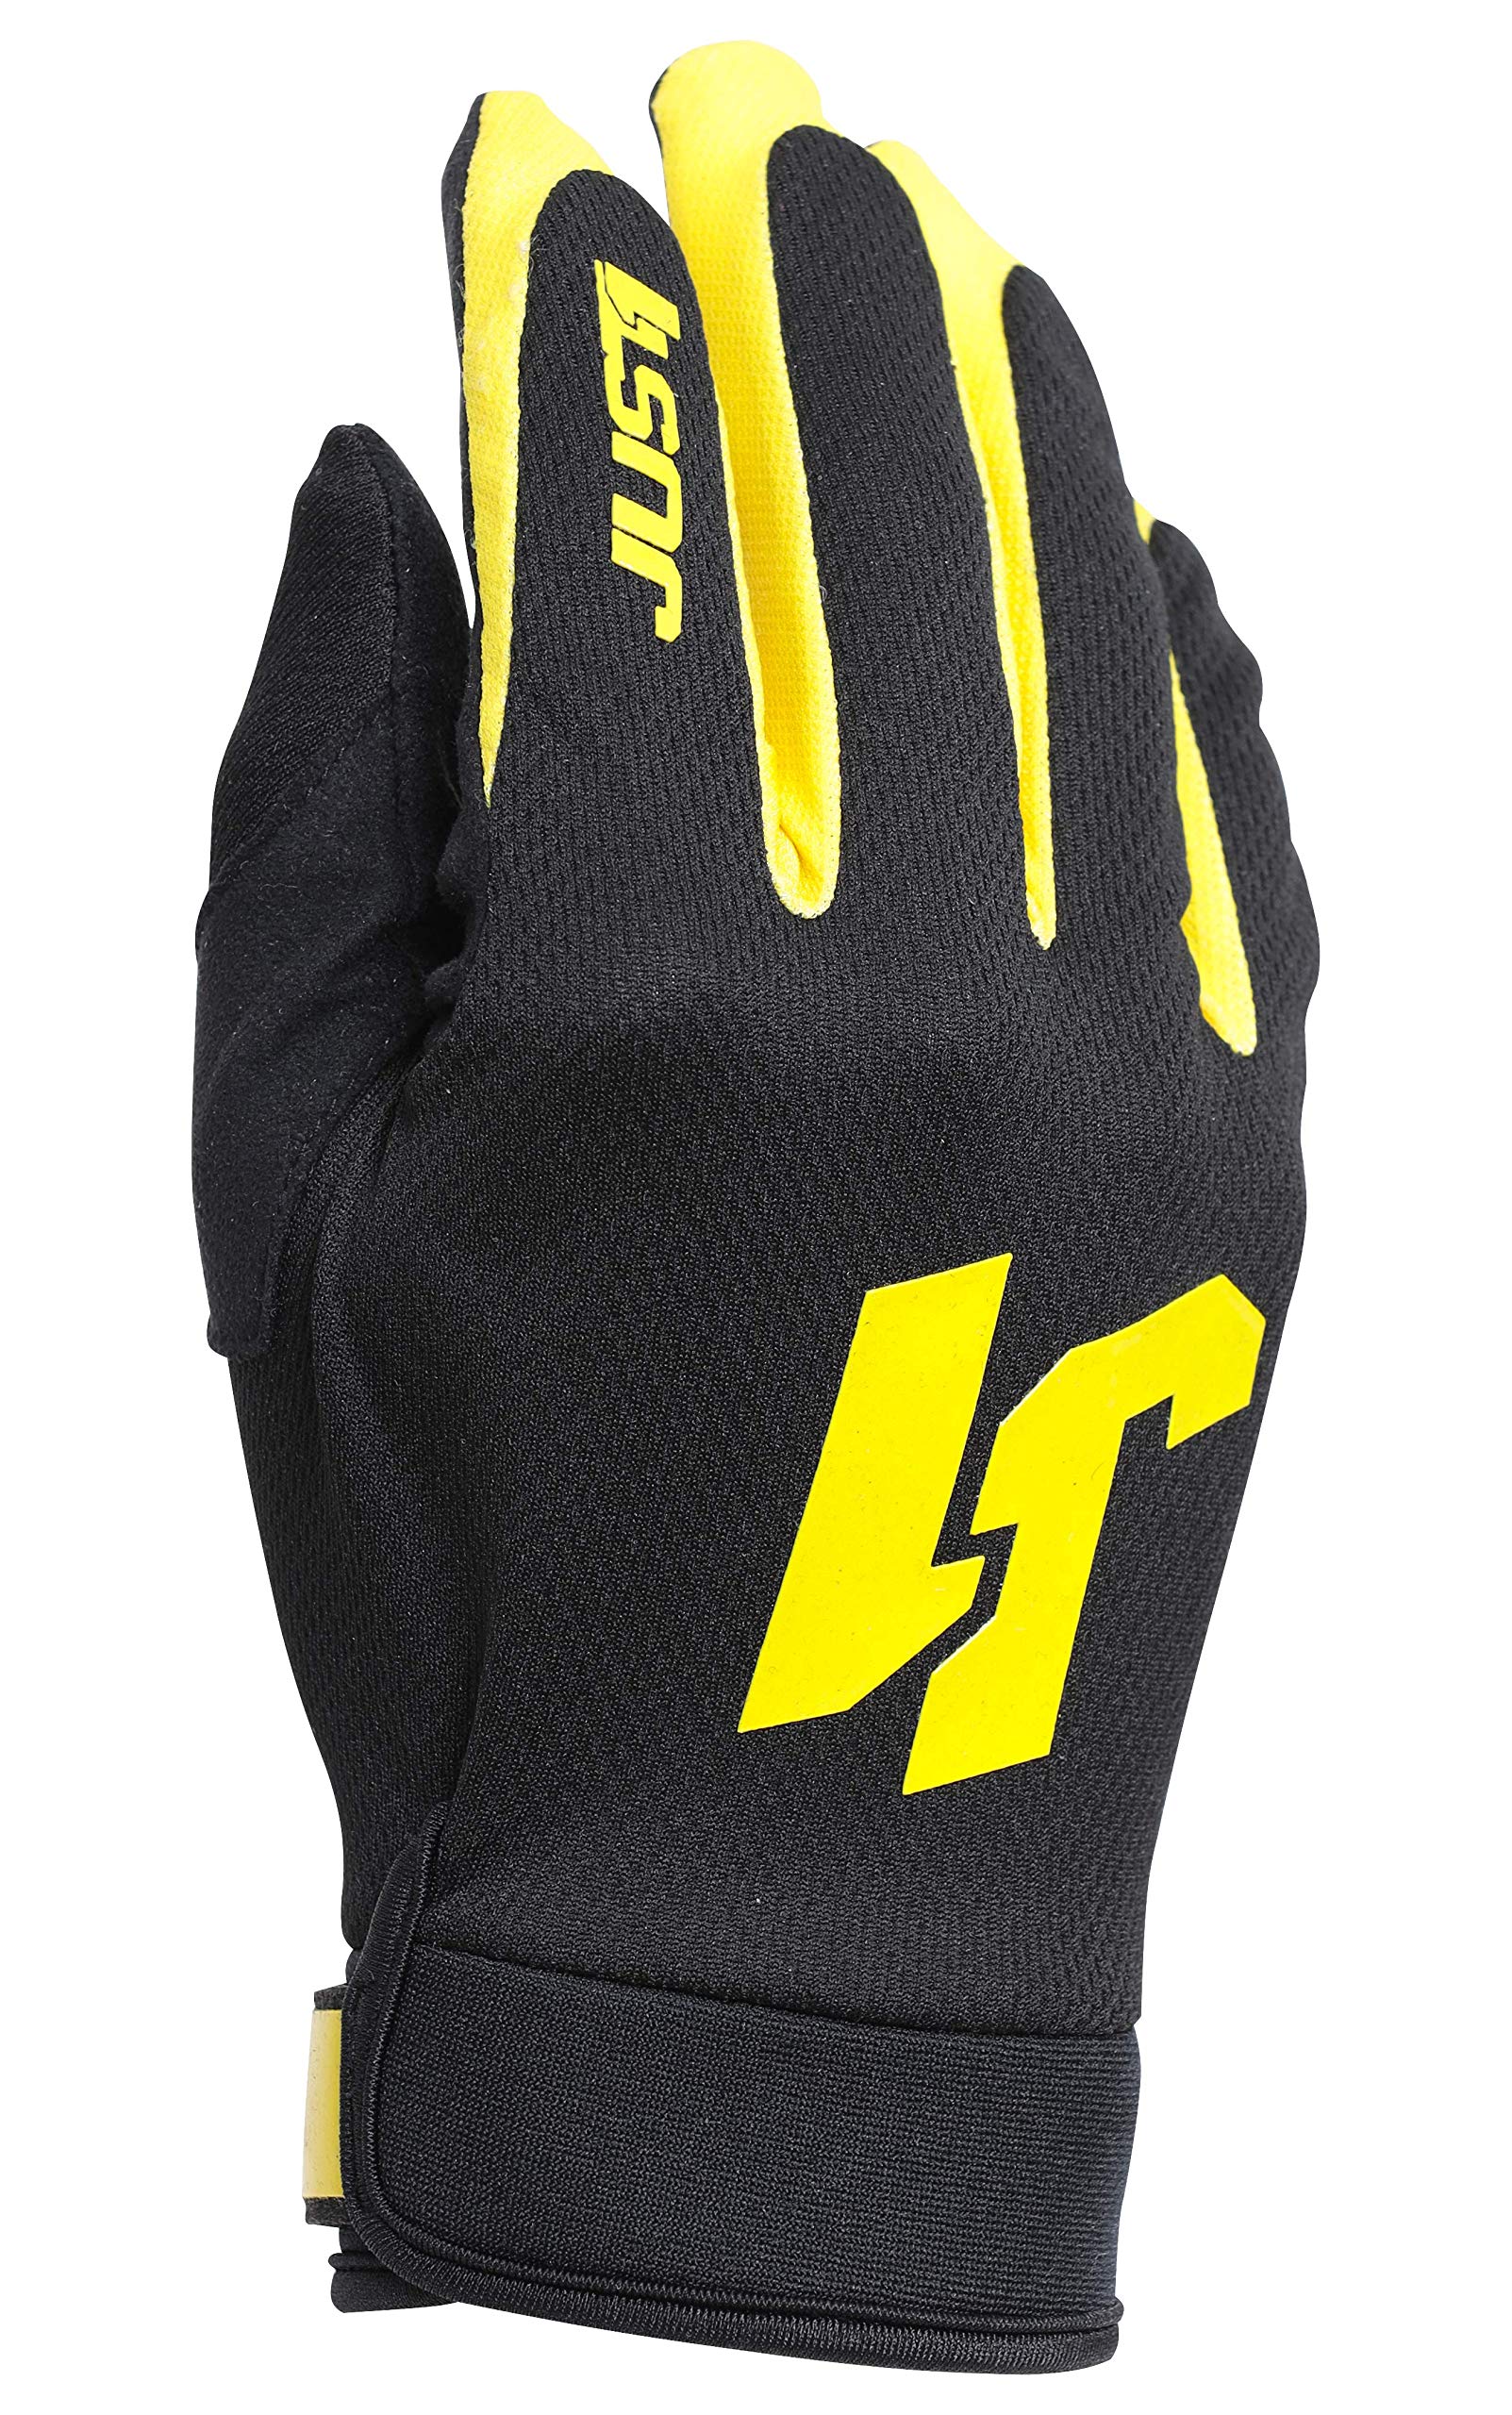 Just 1 Helmets J-FLEX Gloves Black - Yellow - TG S S Nero - Giallo von Just 1 Helmets